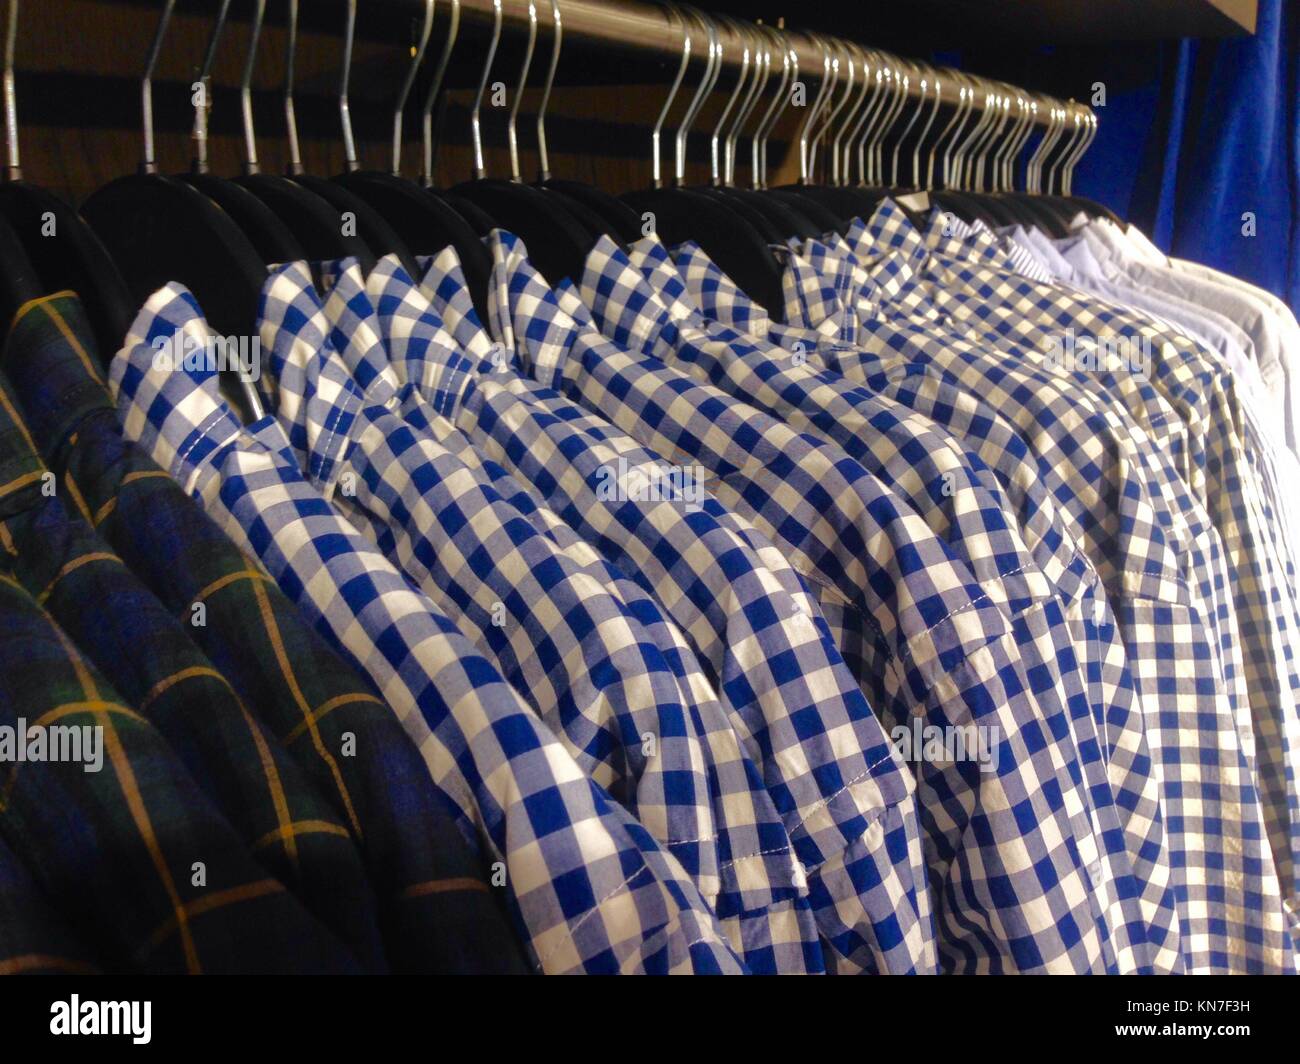 Hanger plein de chemises à carreaux pour hommes au magasin. Banque D'Images